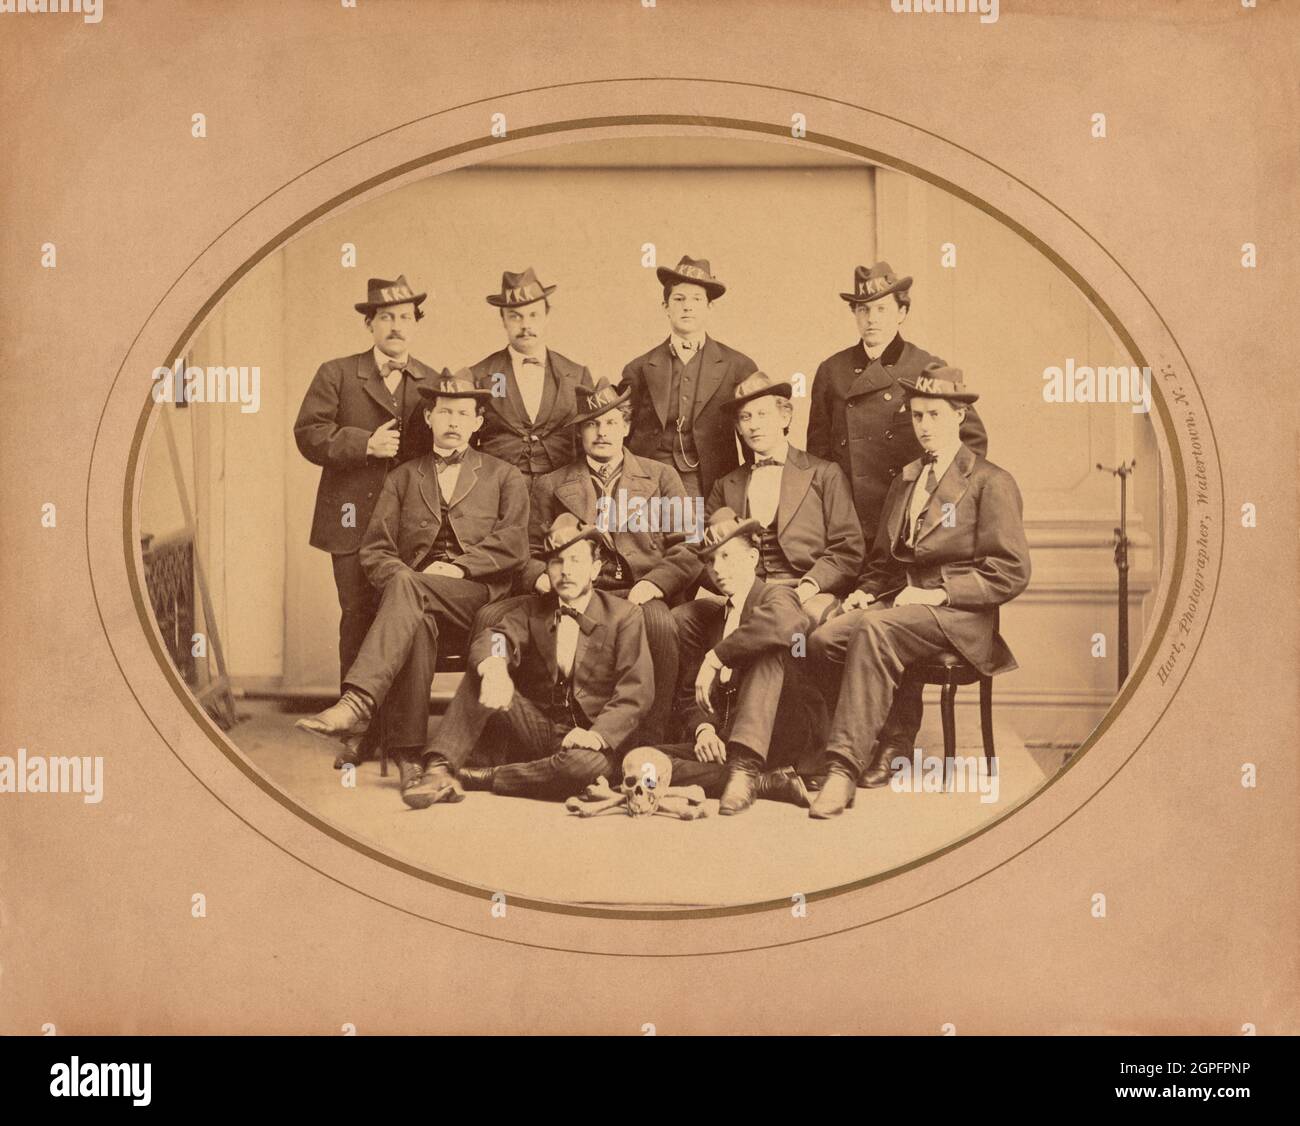 Foto d'epoca circa 1870 che mostra i membri del Ku Klux Klan New York City Watertown Division 289 che indossa i cappelli KKK e posa con un cranio e ossa incrociate Foto Stock